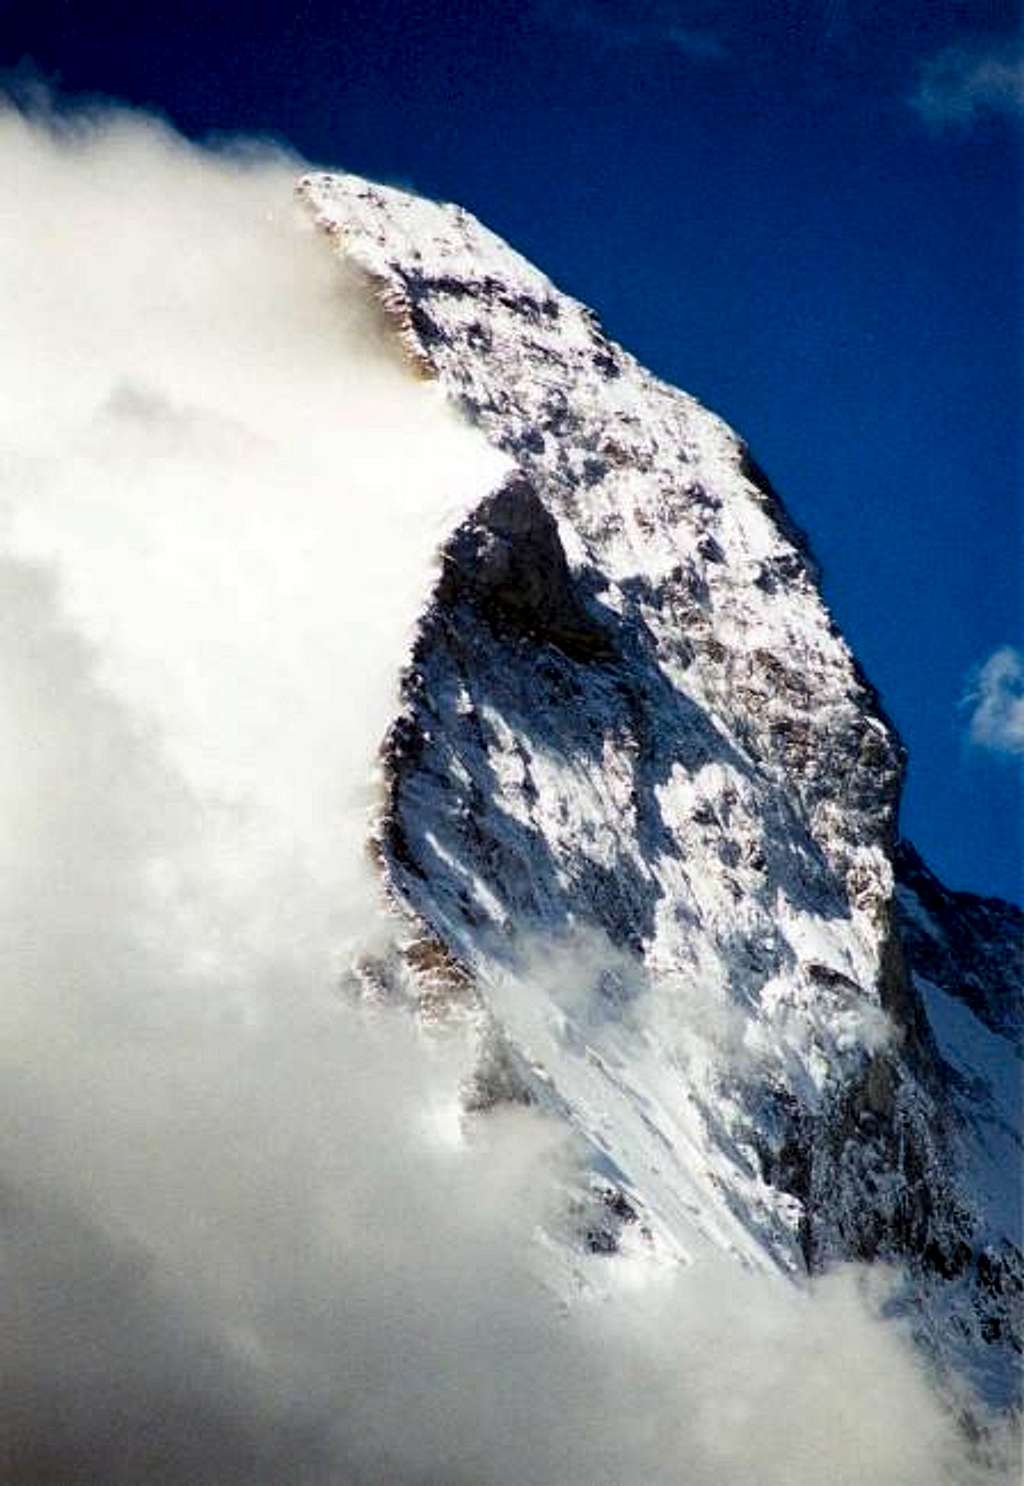 Matterhorn peak with a vail...